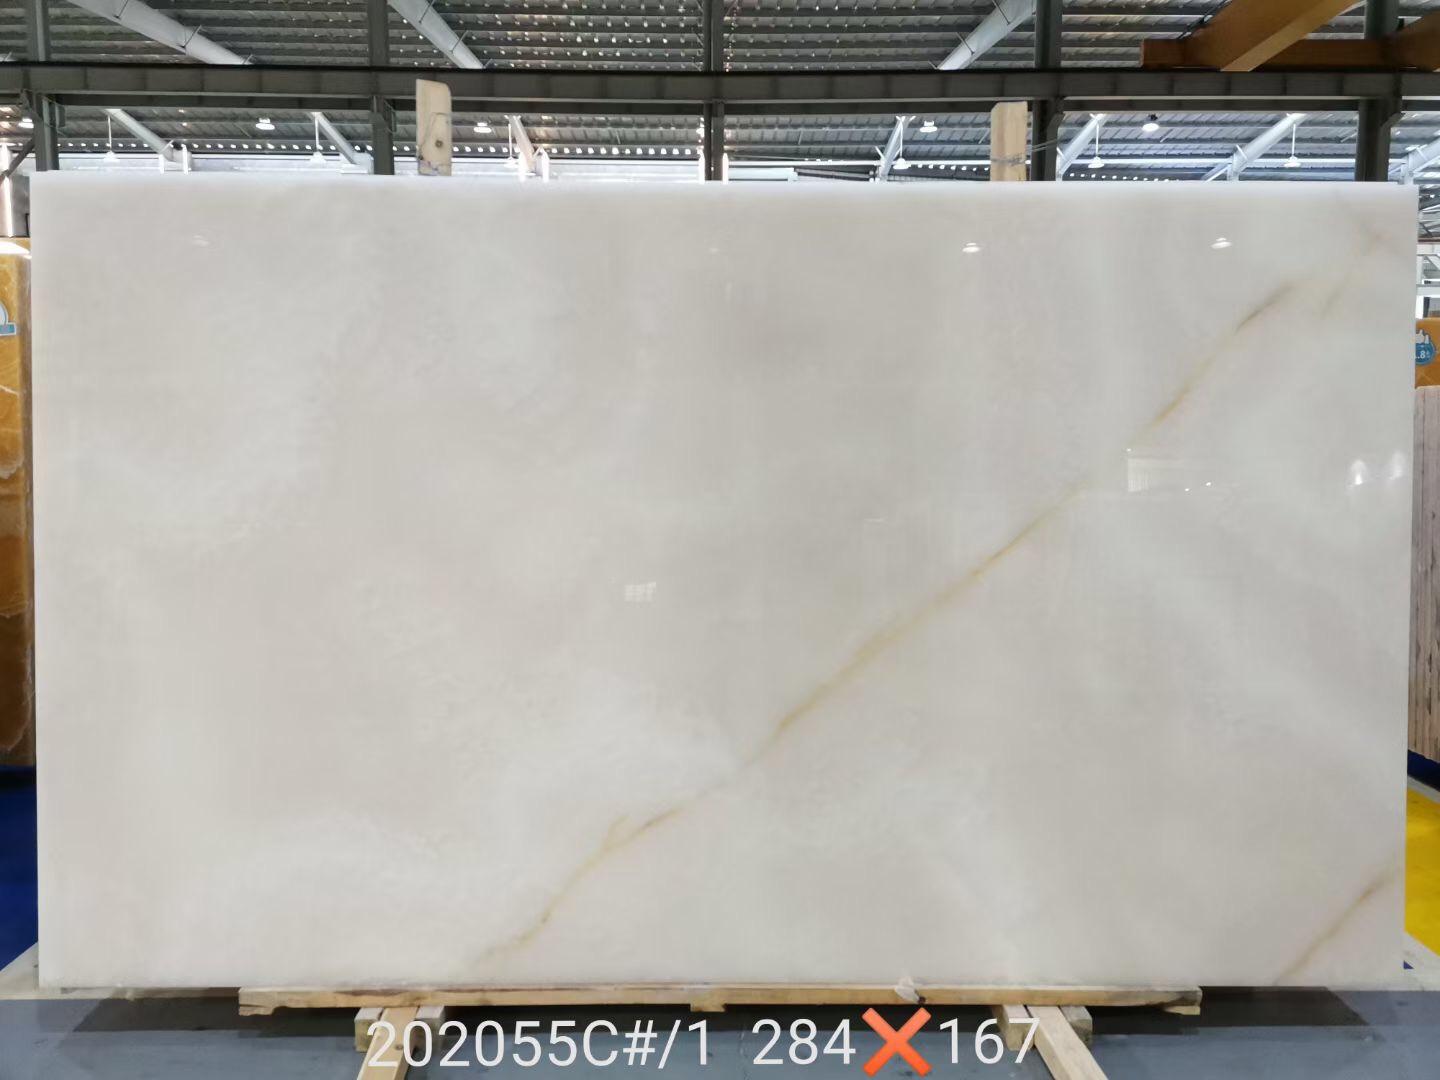 Snow White Onyx Marble Slab Decoration Stone tiles